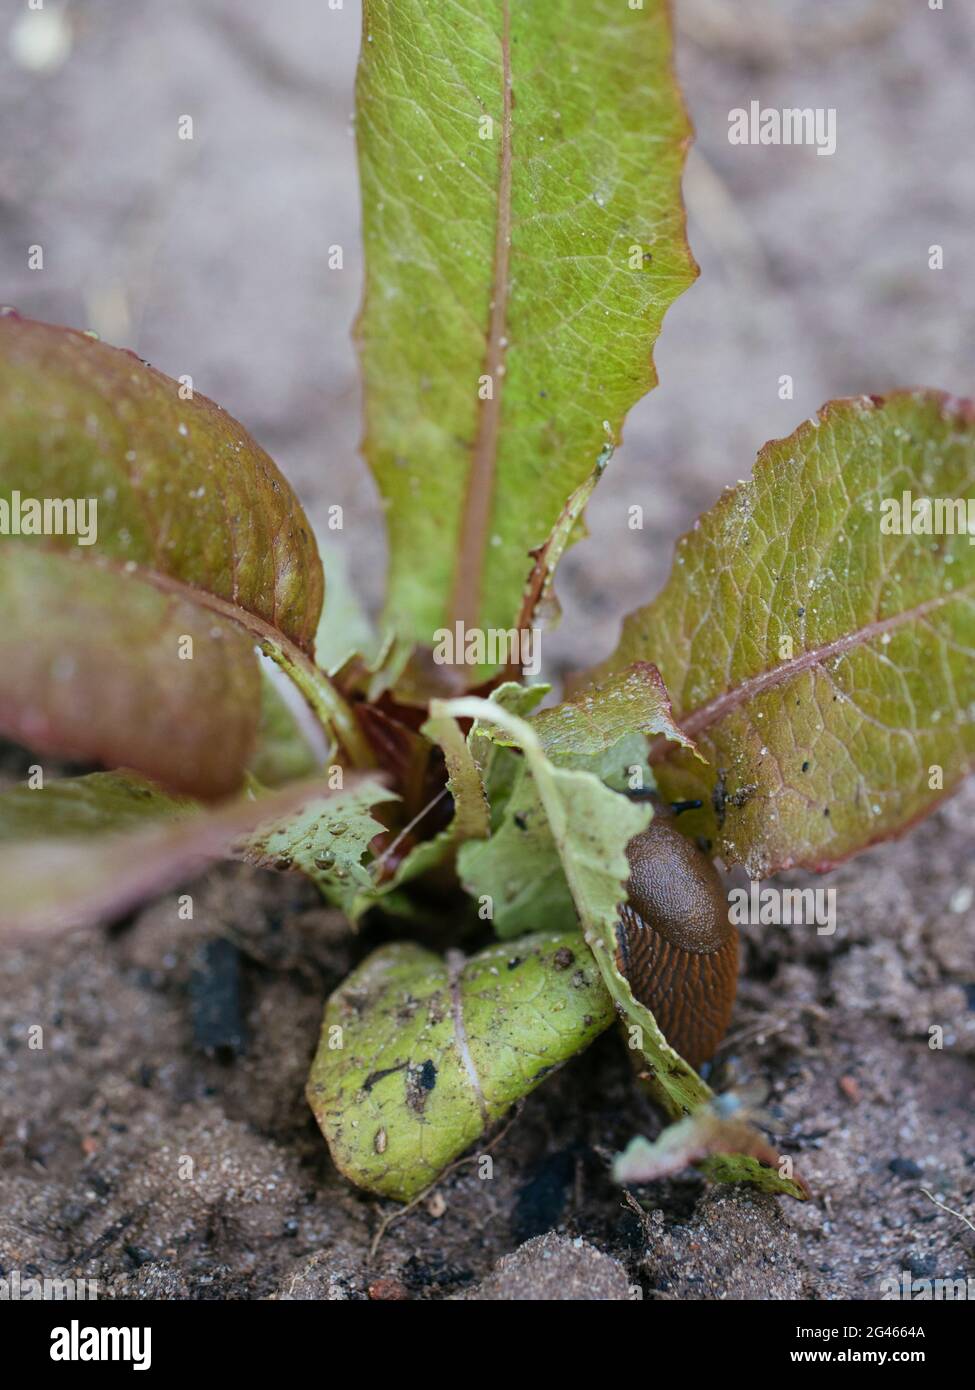 Slug español (Arion vulgaris) comiendo una planta de lechuga joven Foto de stock